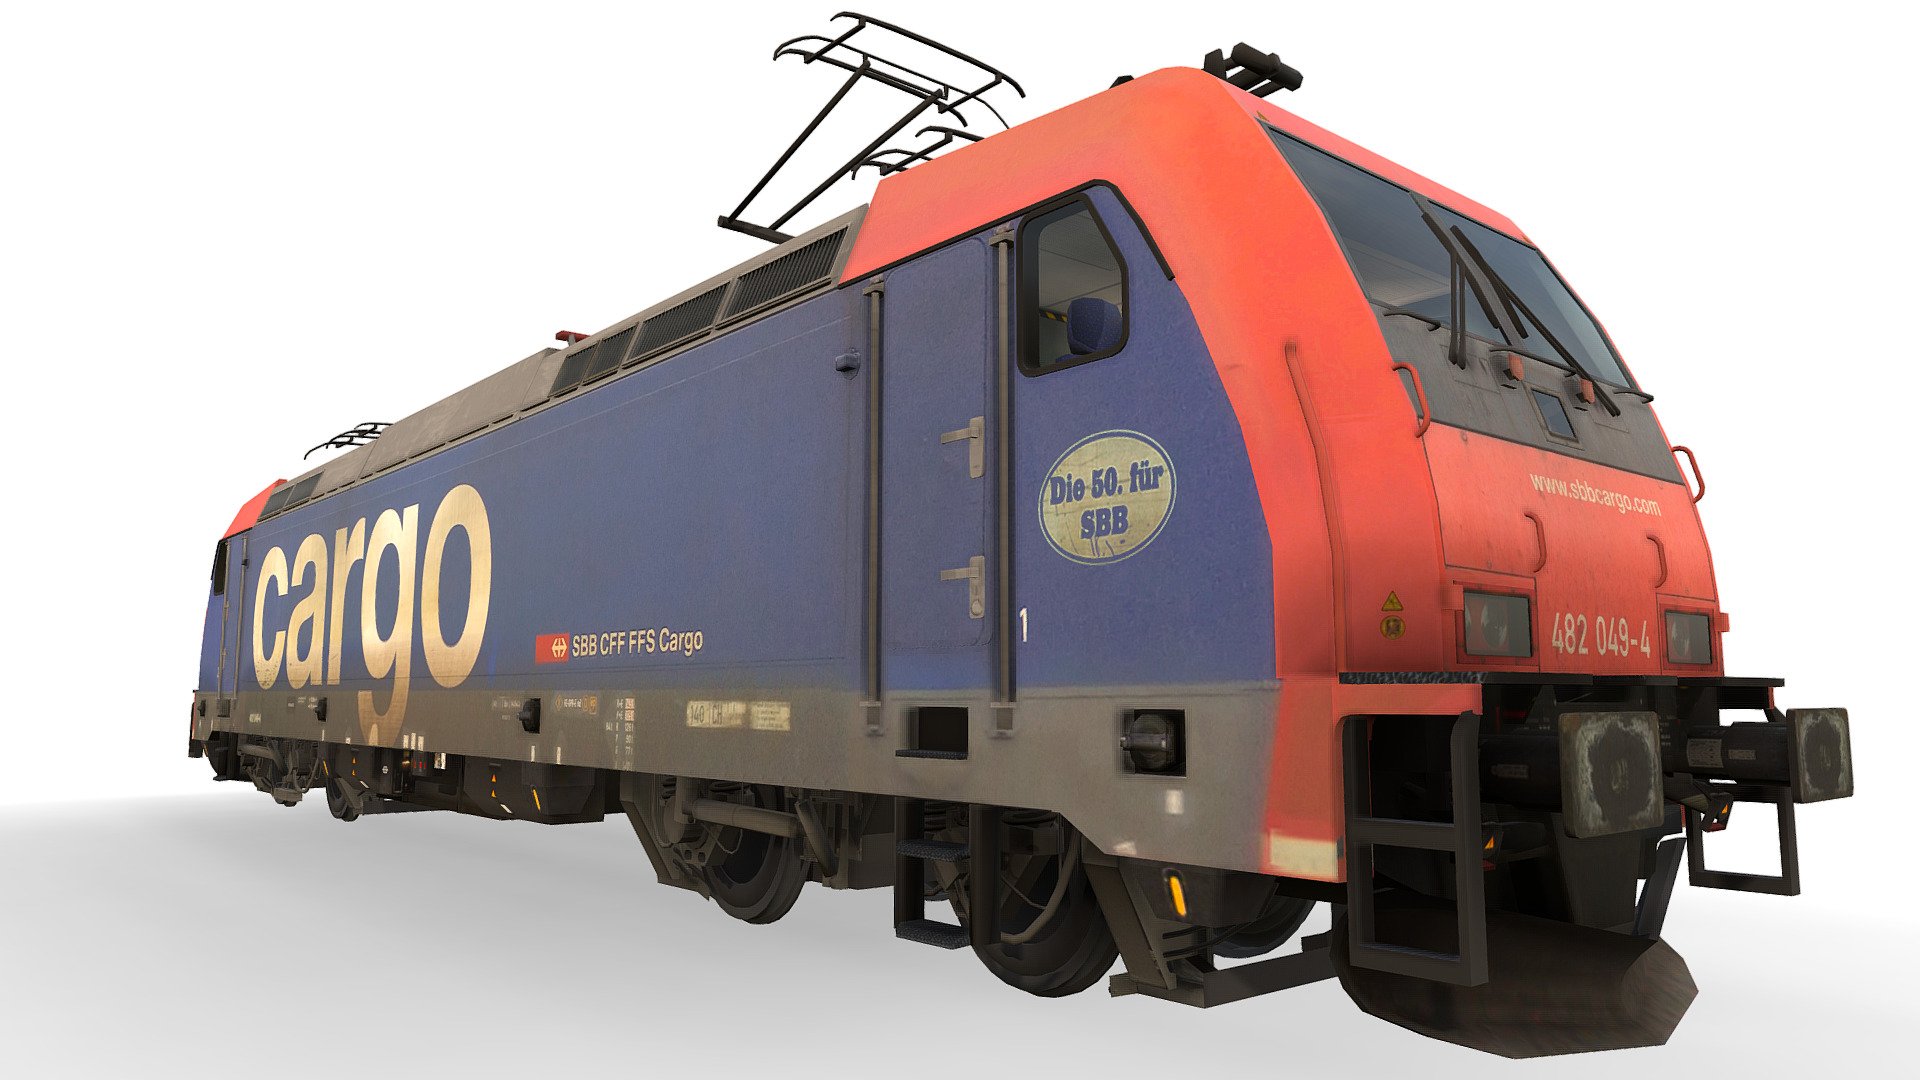 Locomotive Class 185 - RE482 049-4 - SBB - Buy Royalty Free 3D model by cj187 3d model